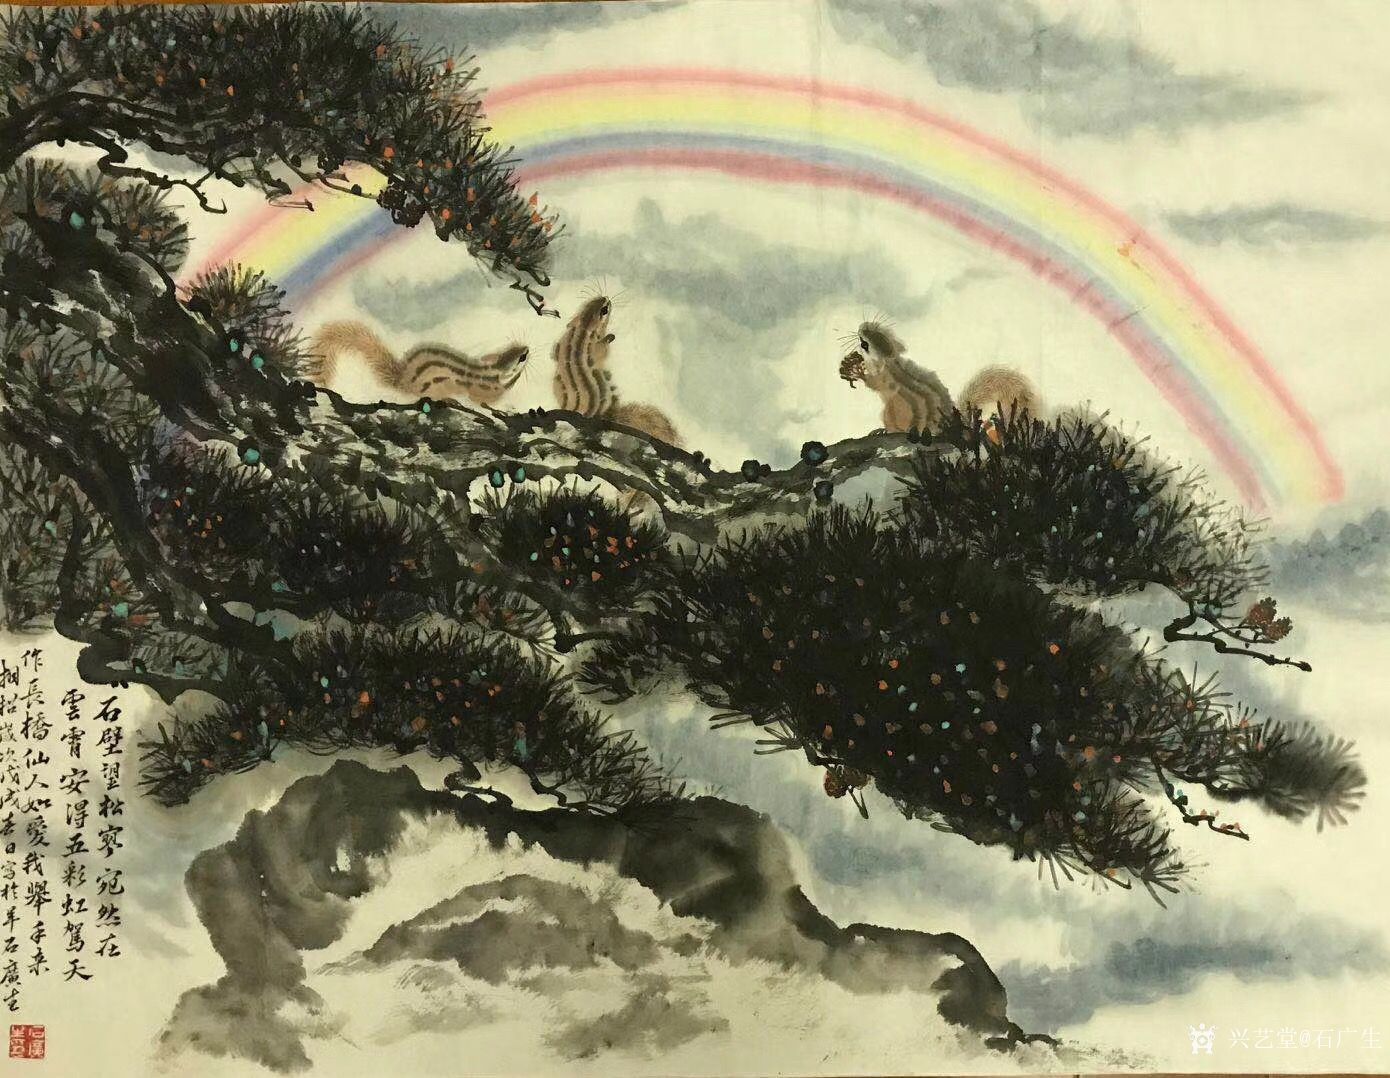 石广生-国画《彩虹总在风雨后》,"石壁望松廖,宛